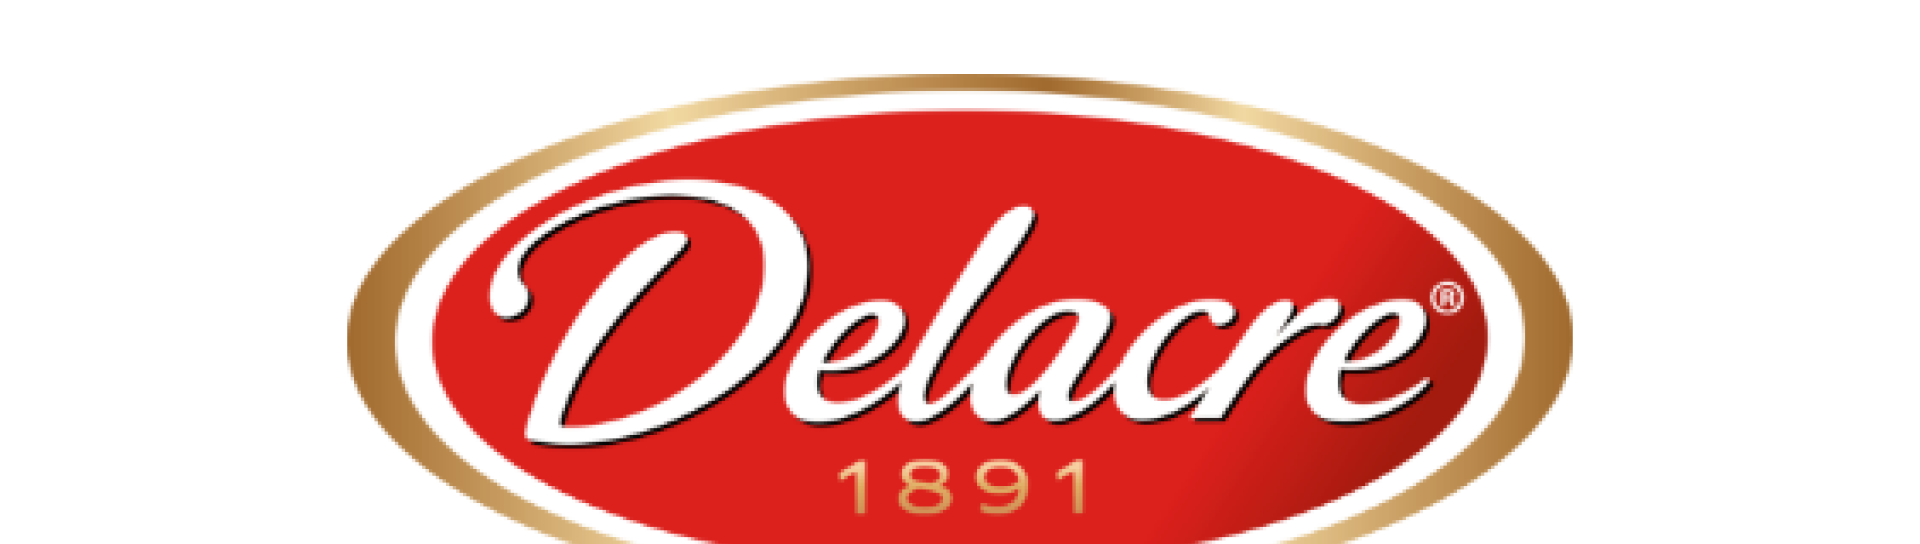 Delacre-logo-hp-def